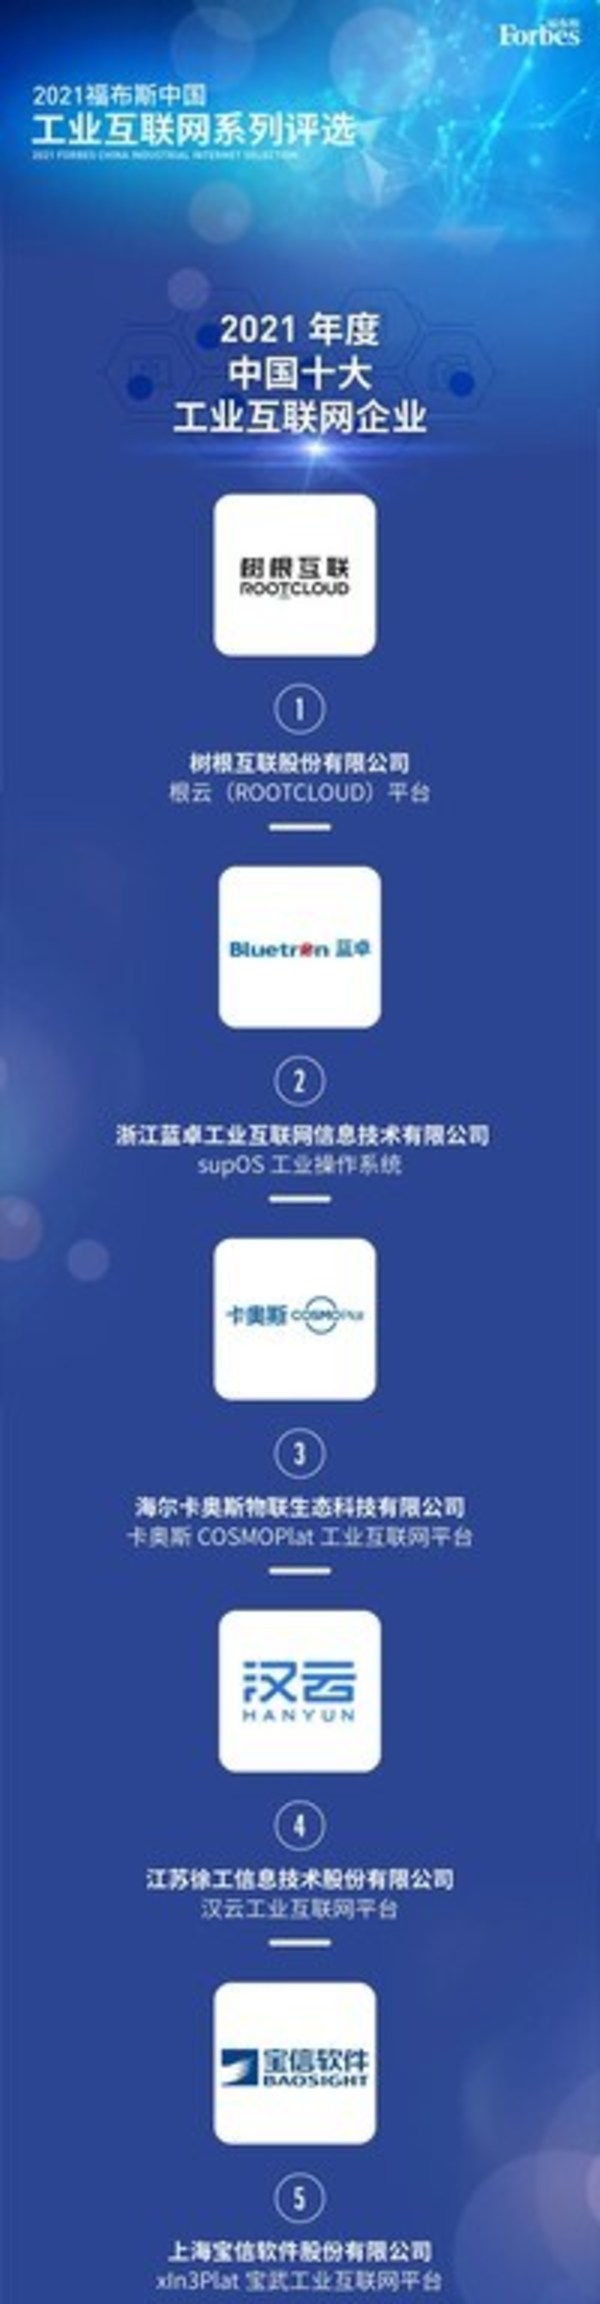 supOS行业第二 蓝卓入选2021福布斯中国十大工业互联网企业